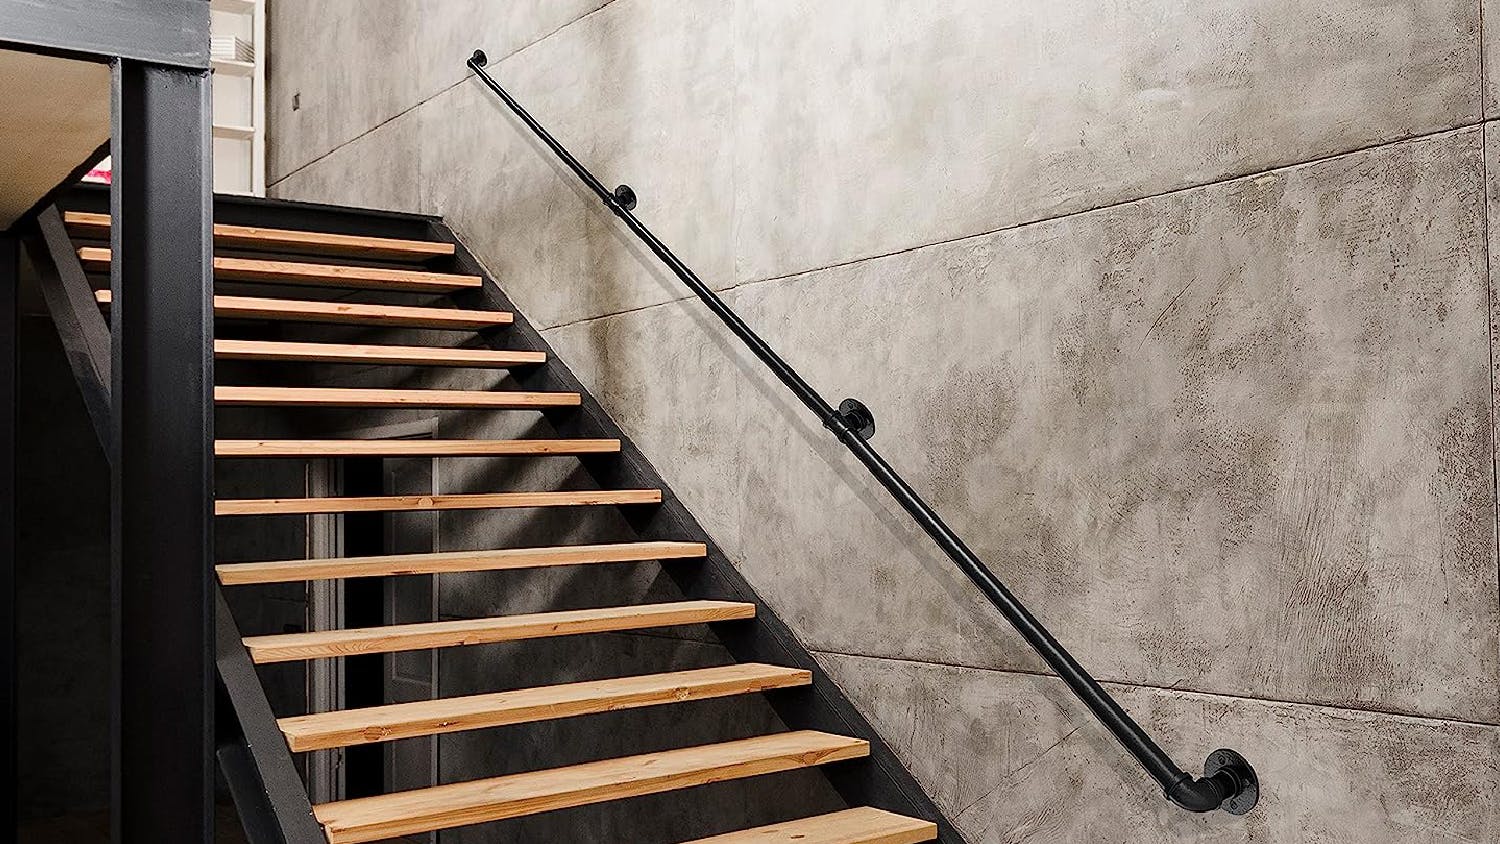 Kmall DIY Industrial Pipe Design Stairway Handrail 170cm